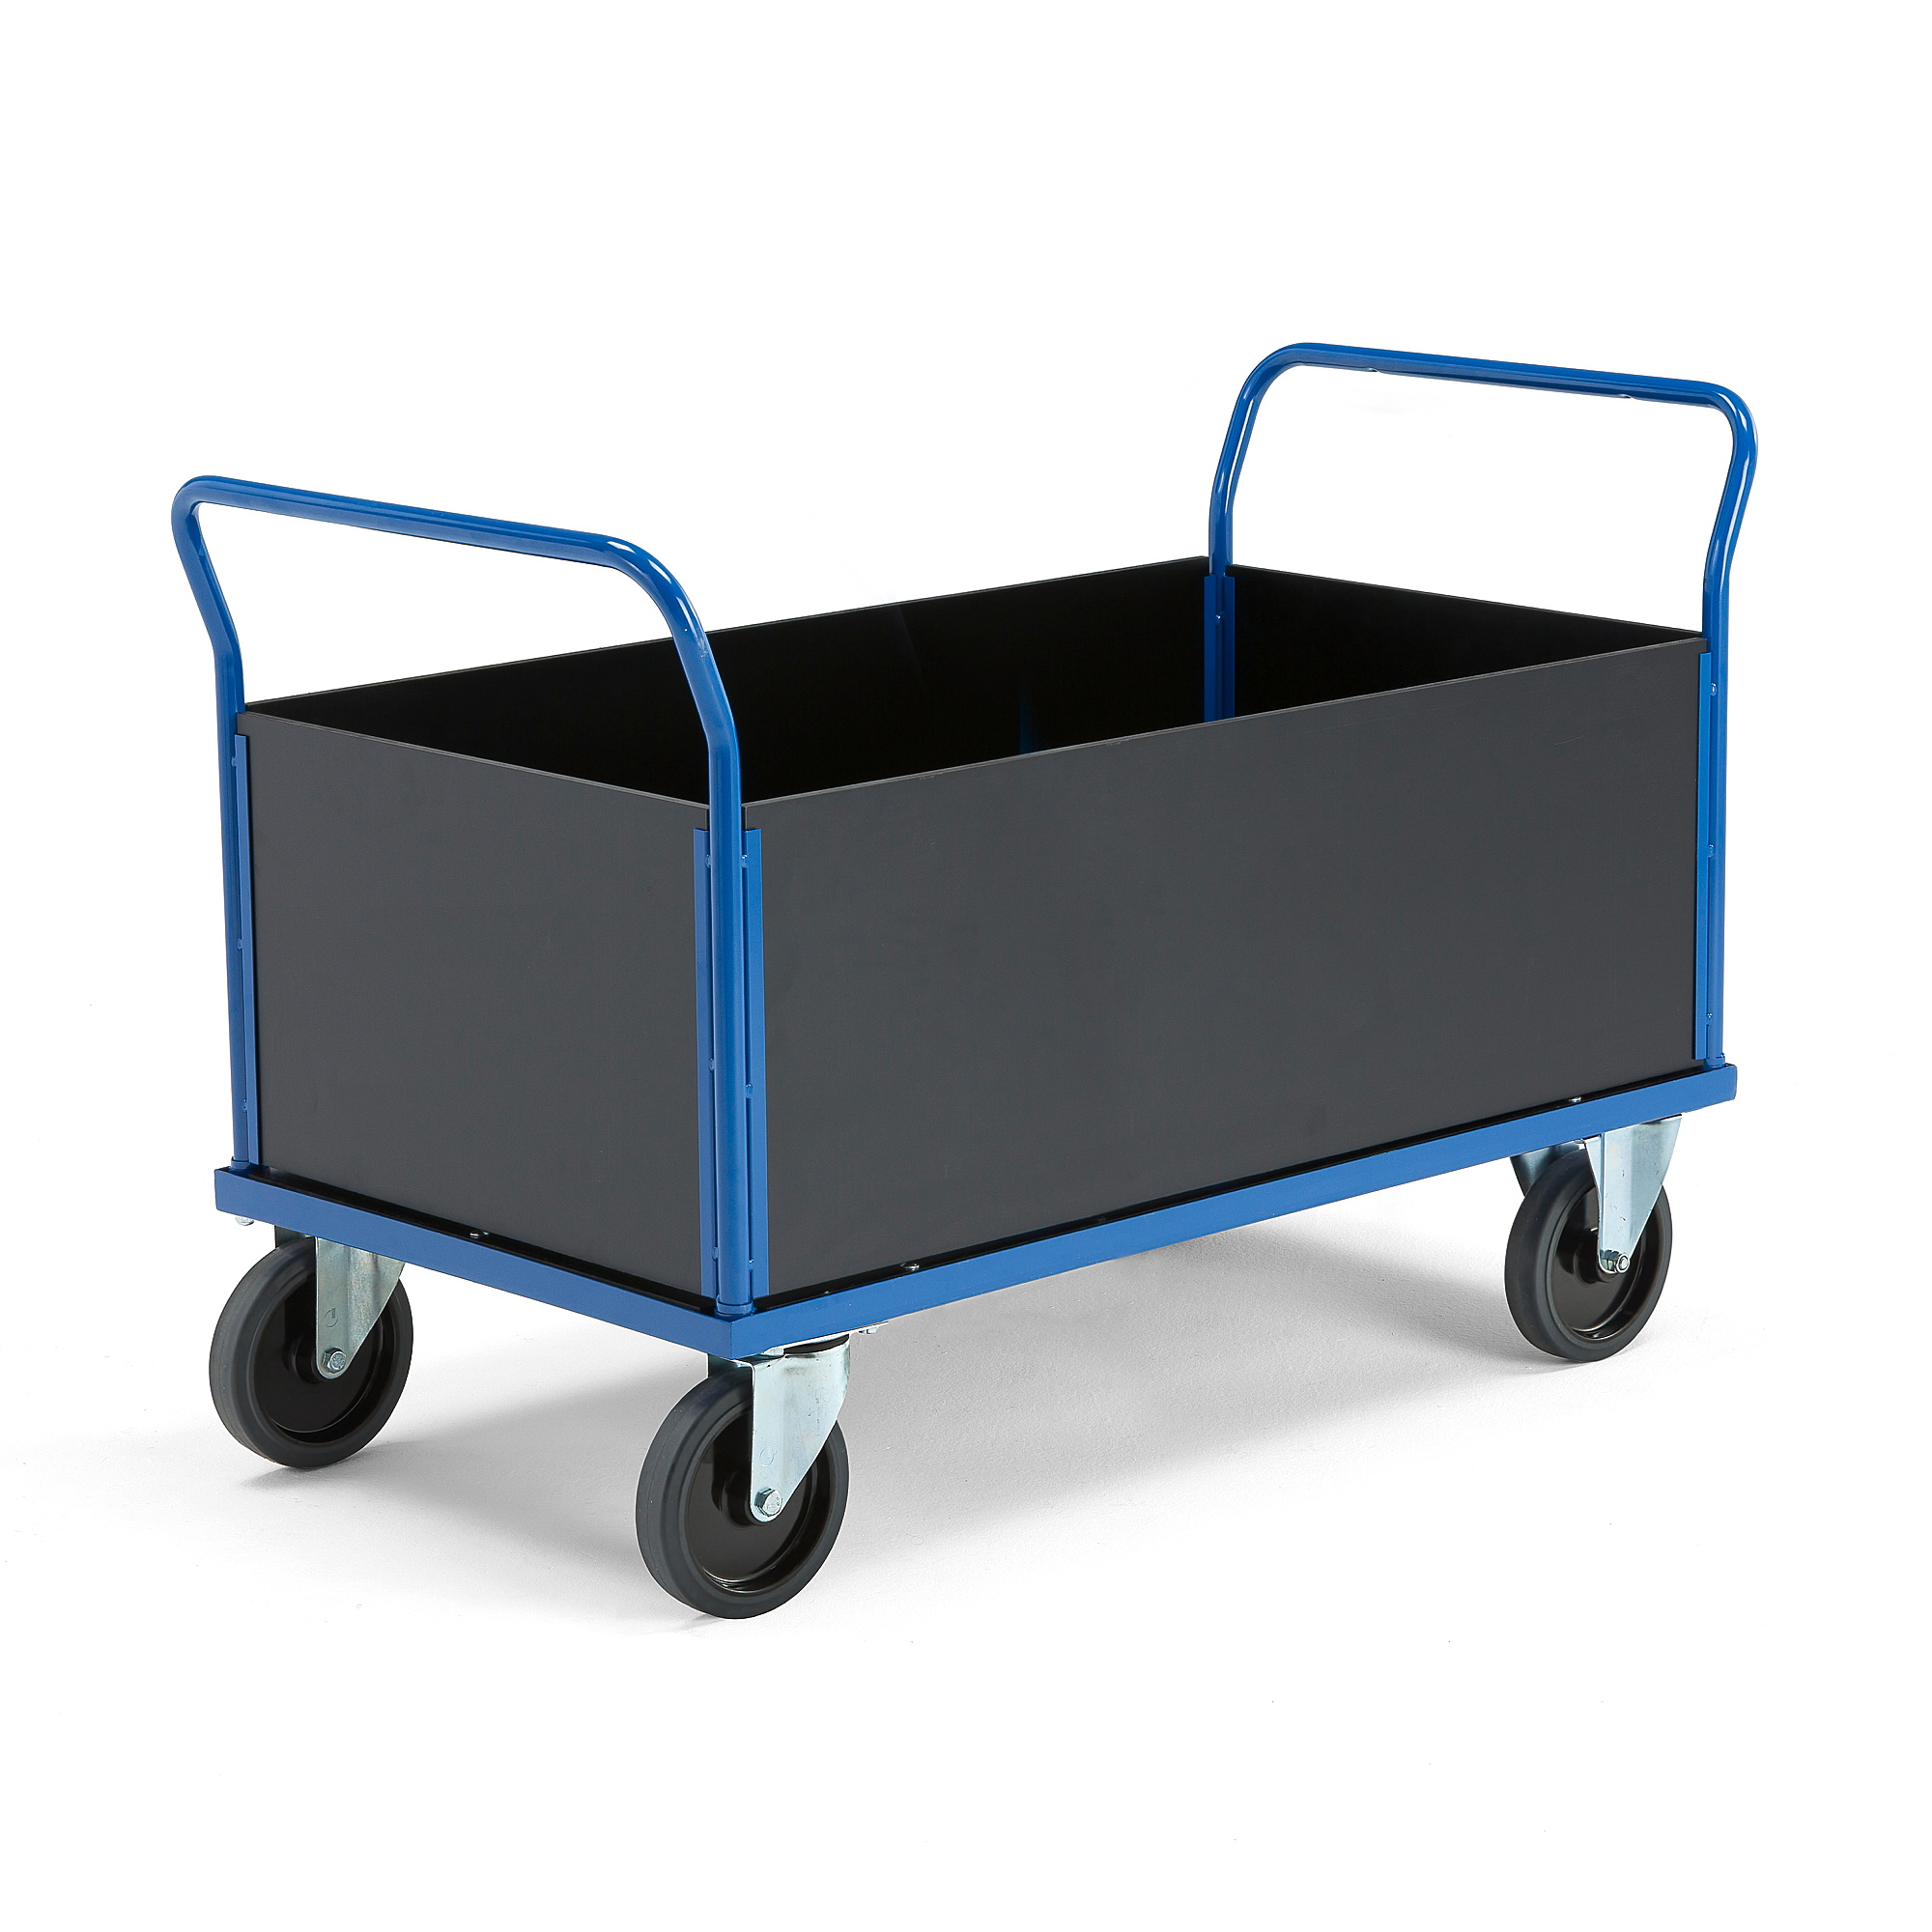 Plošinový vozík TRANSFER, 4 dřevěné stěny, 1200x800 mm, 1000 kg, elastická gumová kola, bez brzd